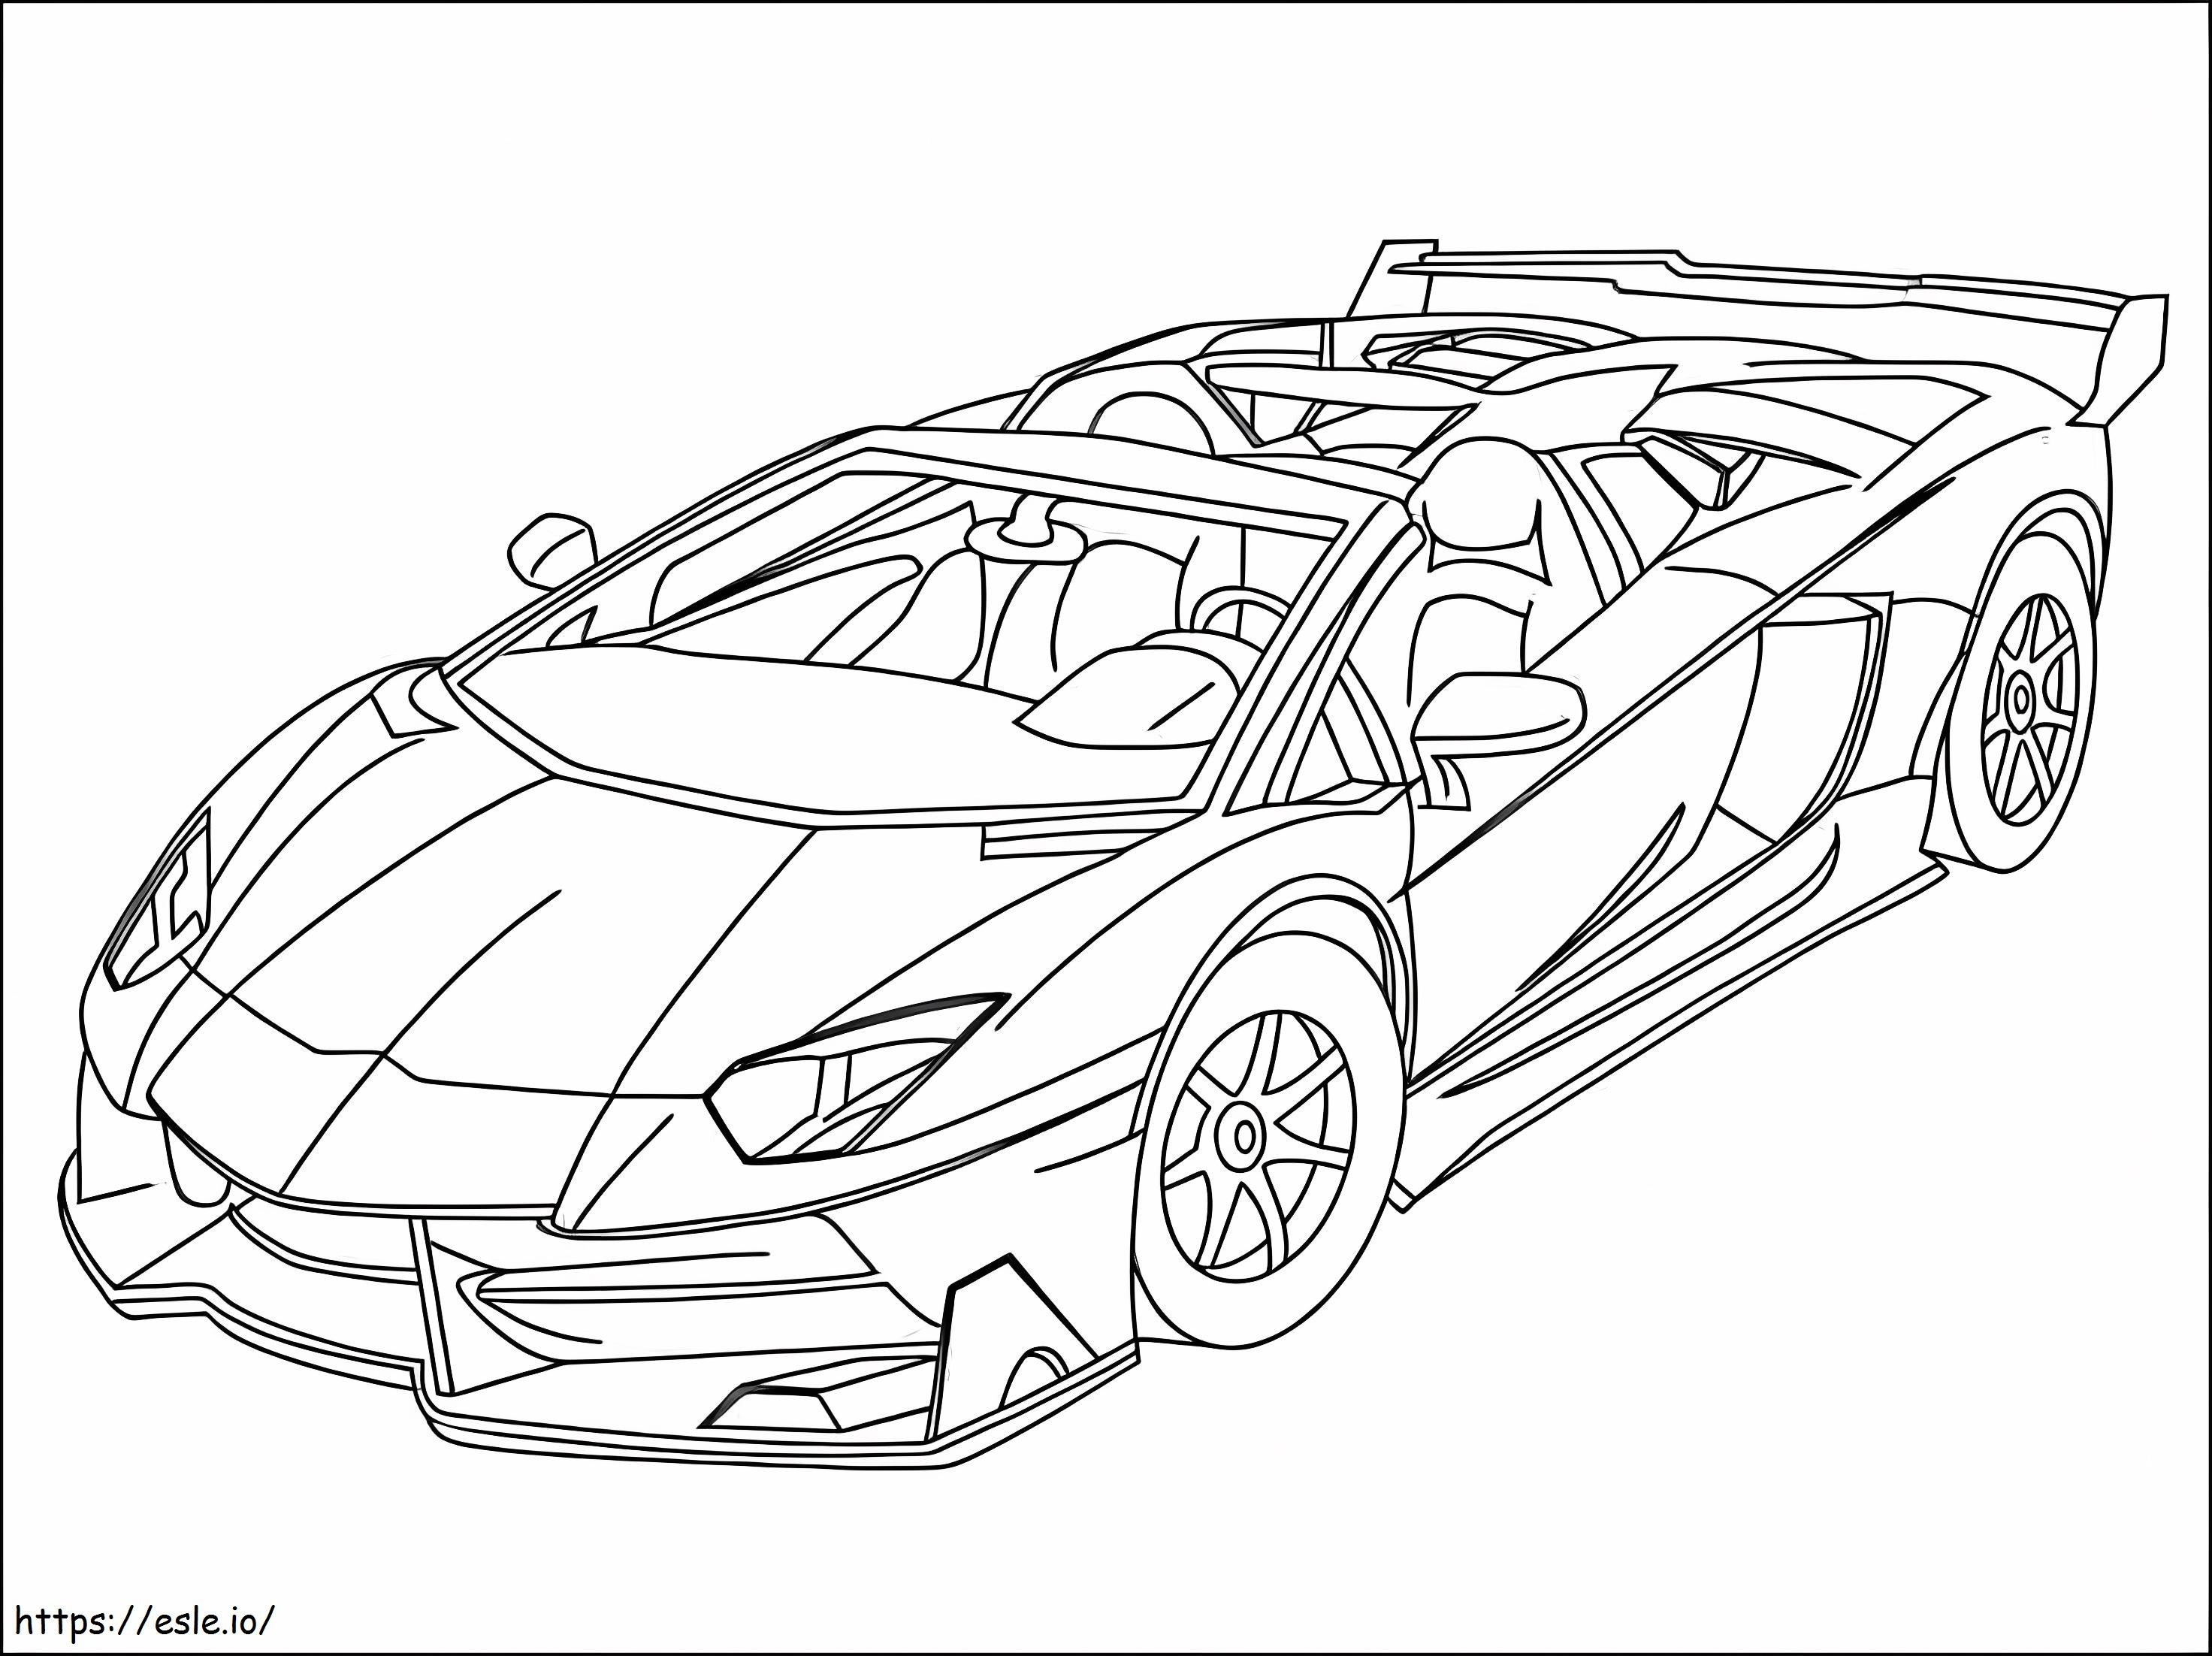 Perfect Lamborghini coloring page